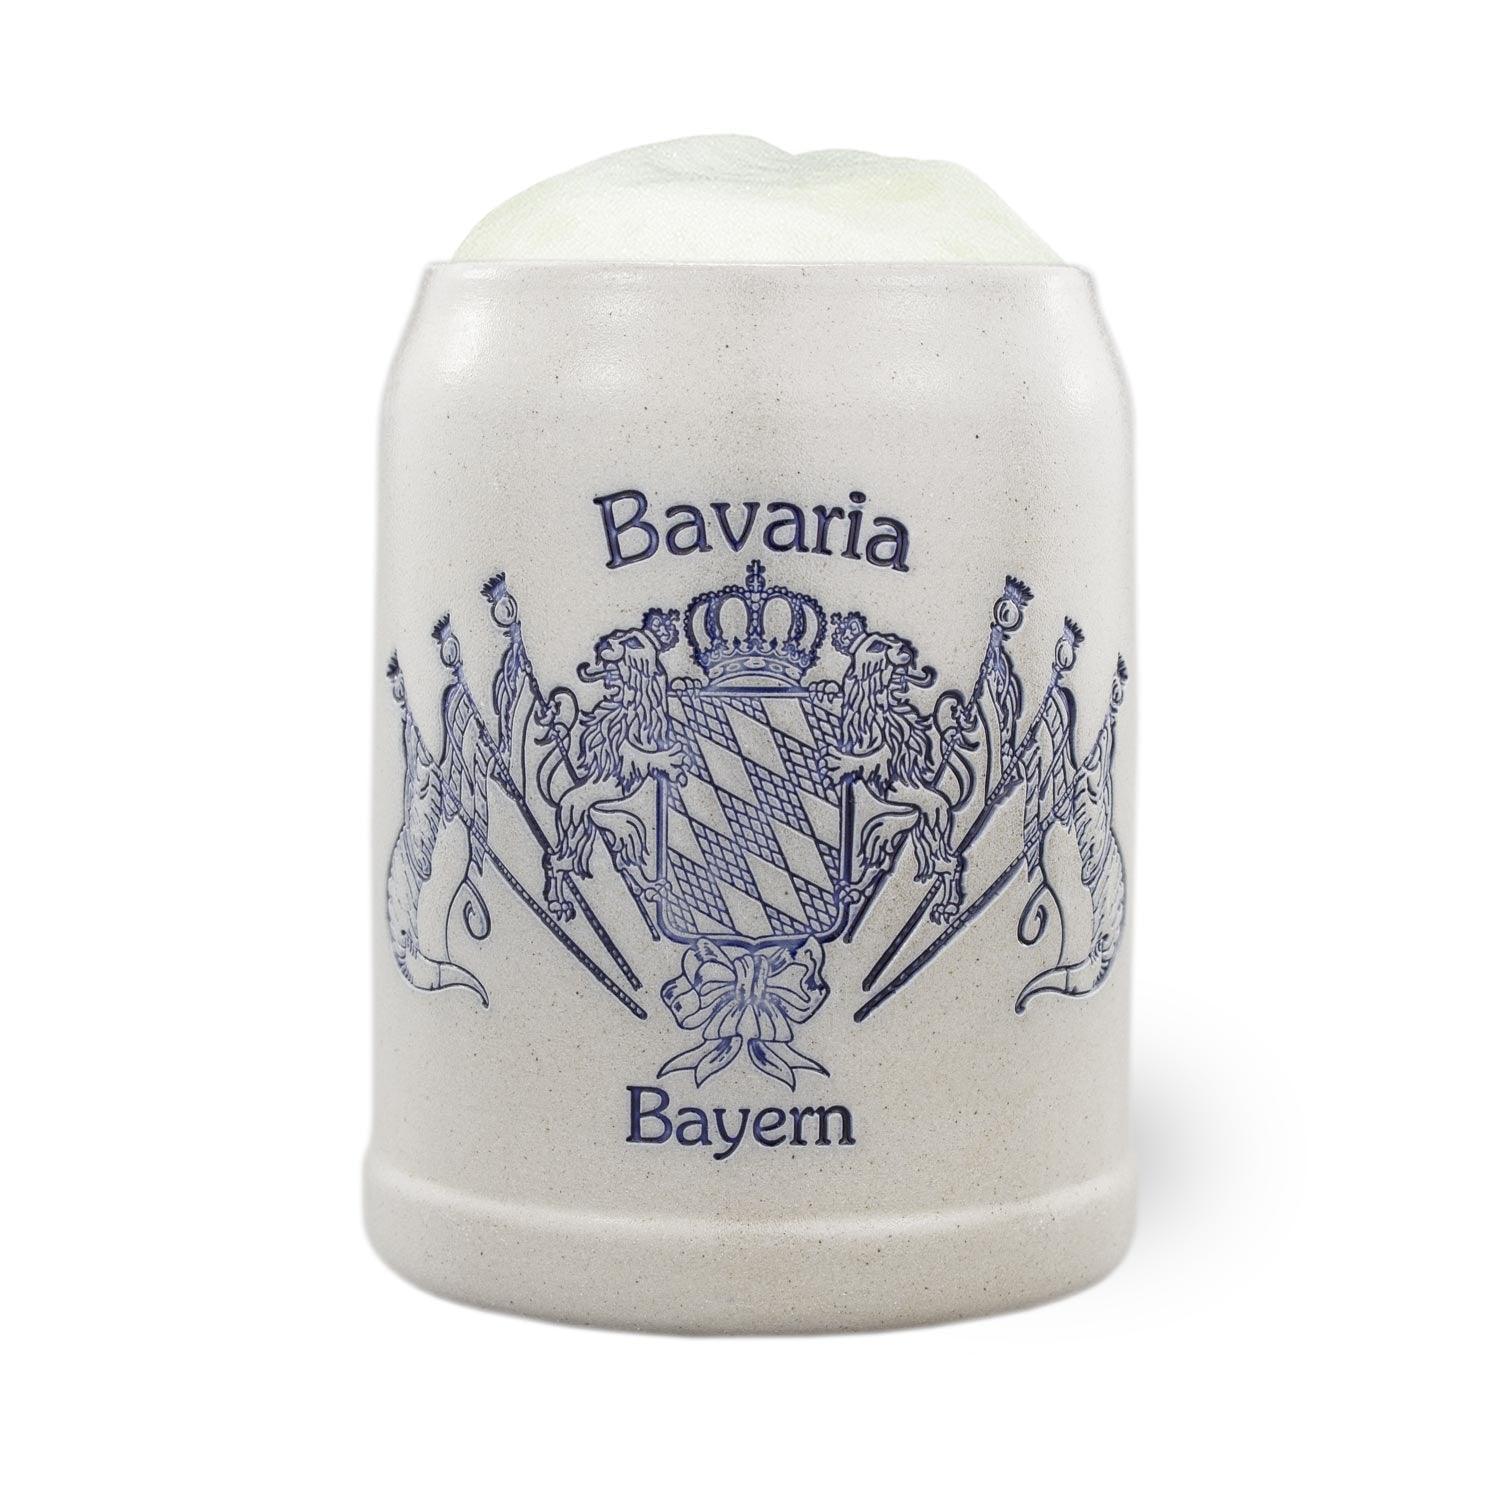 PREMIUM Bierkrug "Bayernwappen mit Fahnen" - bavariashop - mei LebensGfui